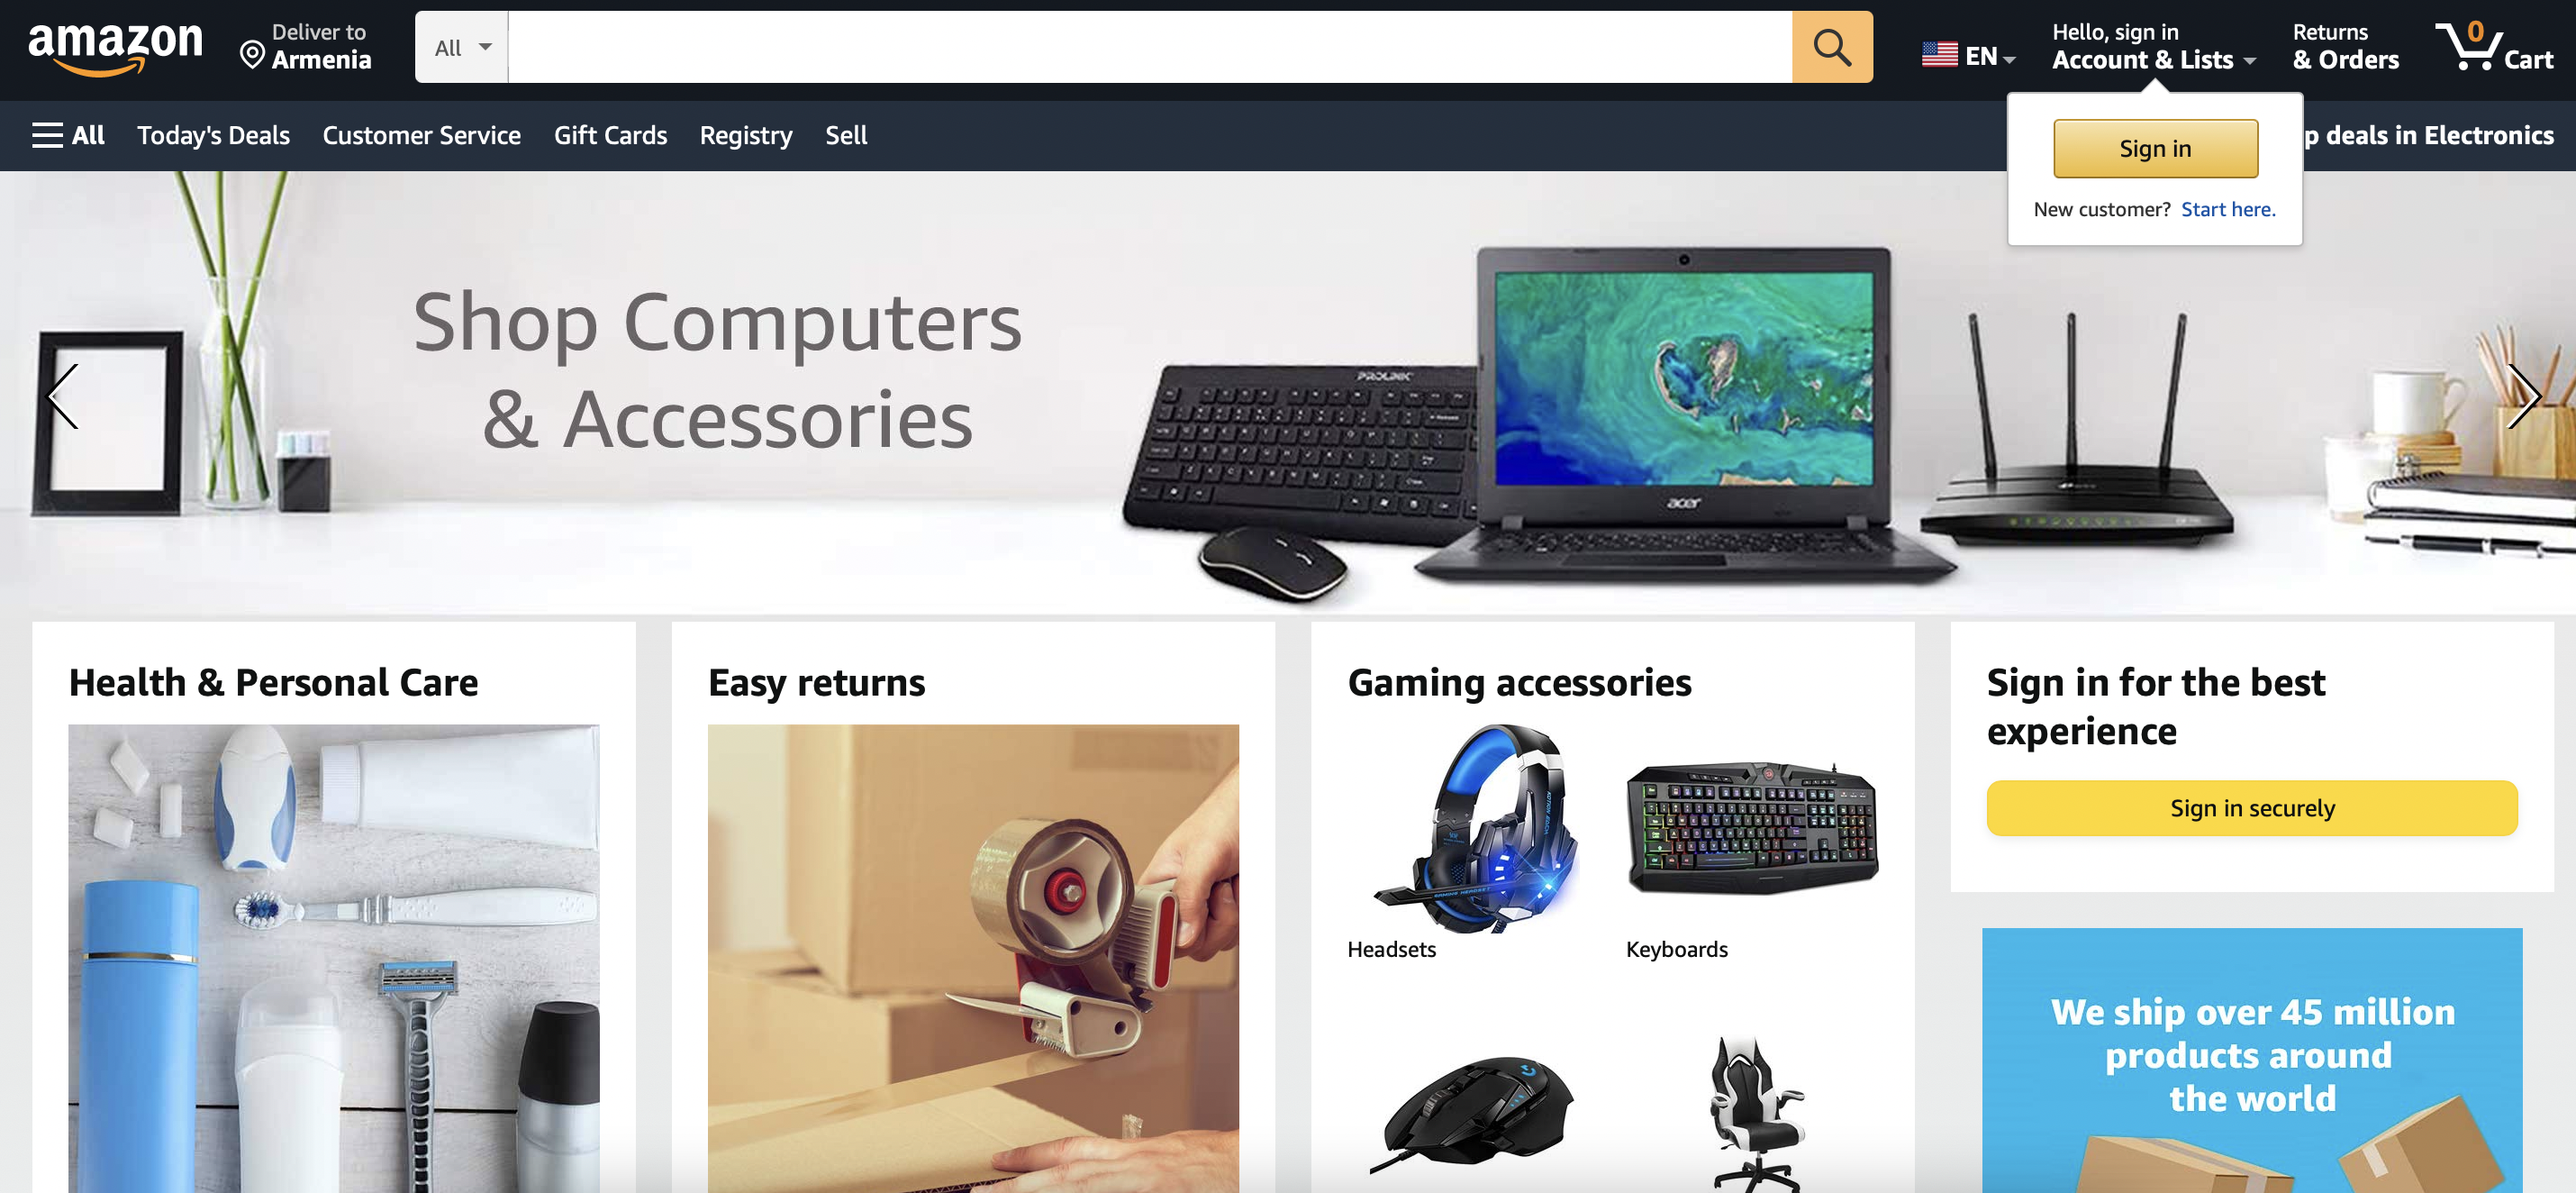 Как разблокировать закрытые категории на Amazon?